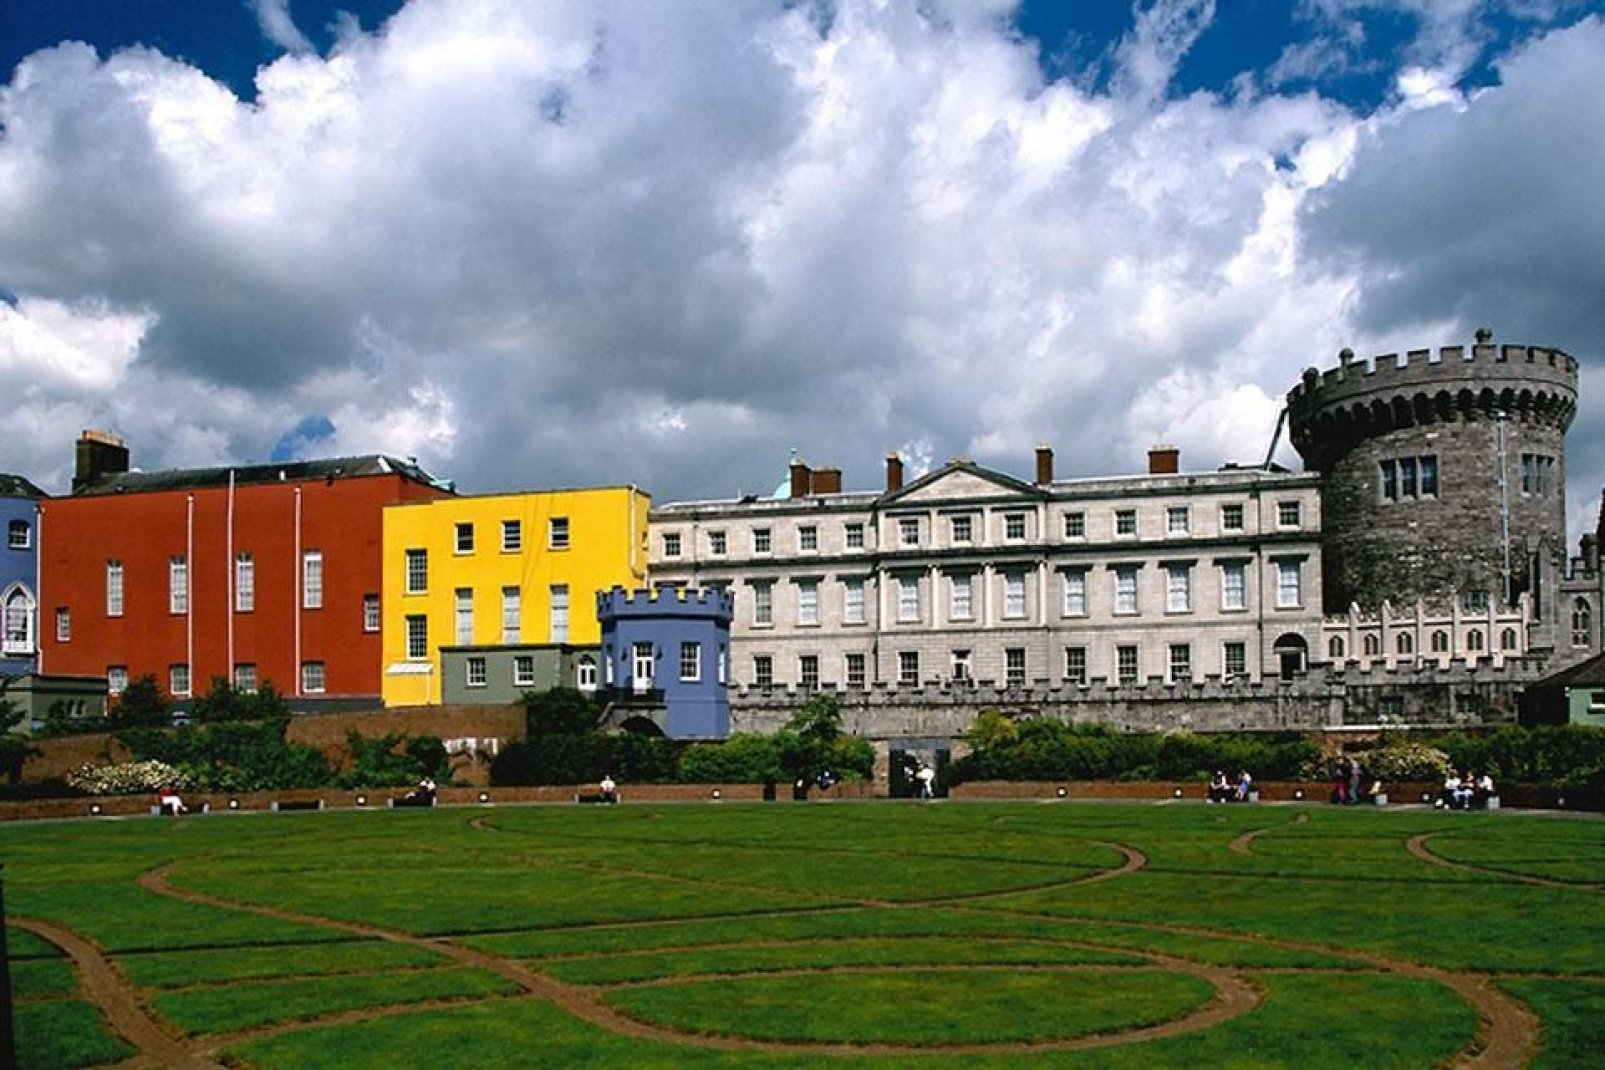 Il castello di Dublino, affiancato dalle recenti costruzioni colorate, domina un bellissimo giardino ben curato